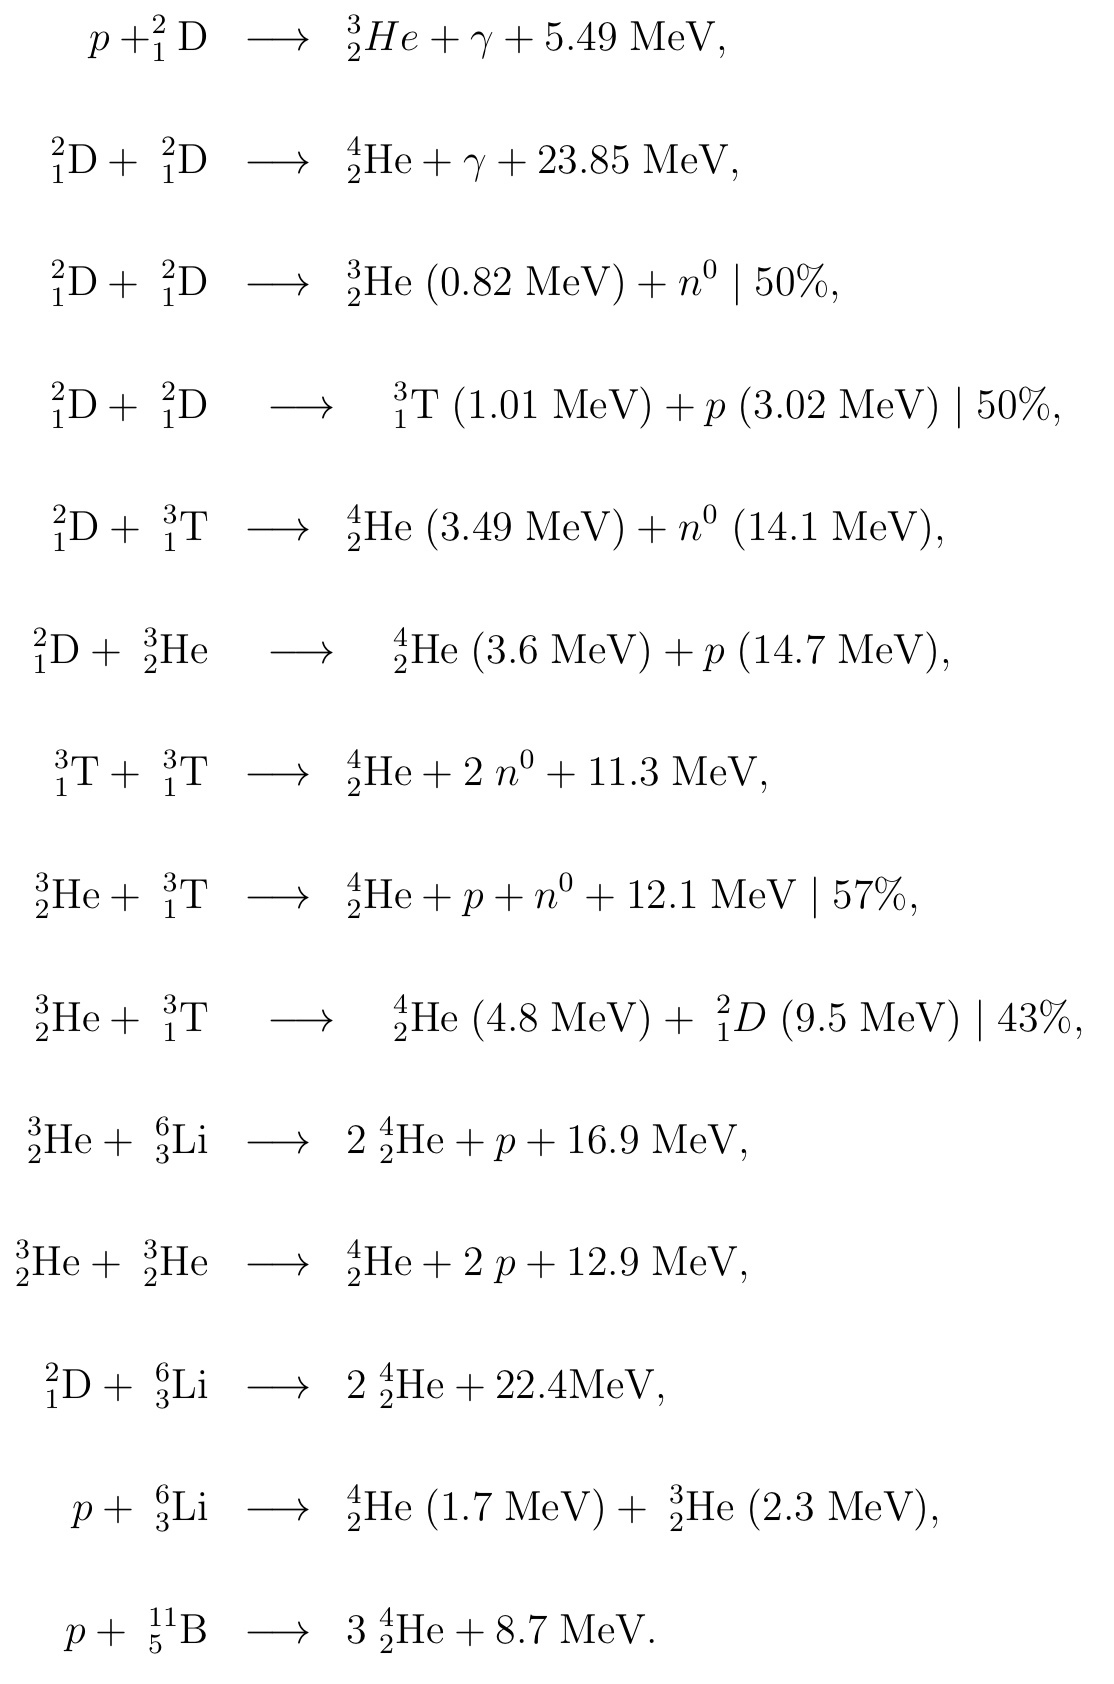 Основные реакции ядерного синтеза с выделением энергии (в Мега электрон-вольтах). p - протон, n - нейтрон, гамма - фотон, D - дейтерий, T - тритий, He - гелий, Li - литий, B - бор. Цифра сверху слева - общее число протонов и нейтронов в ядре, например у трития 3. Цифра снизу слева - заряд ядра, т. е. число протонов, например у трития 1, а у гелия-3 это 2. Чем выше заряд ядра, тем сильнее кулоновский барьер, который необходимо преодолеть для реакции